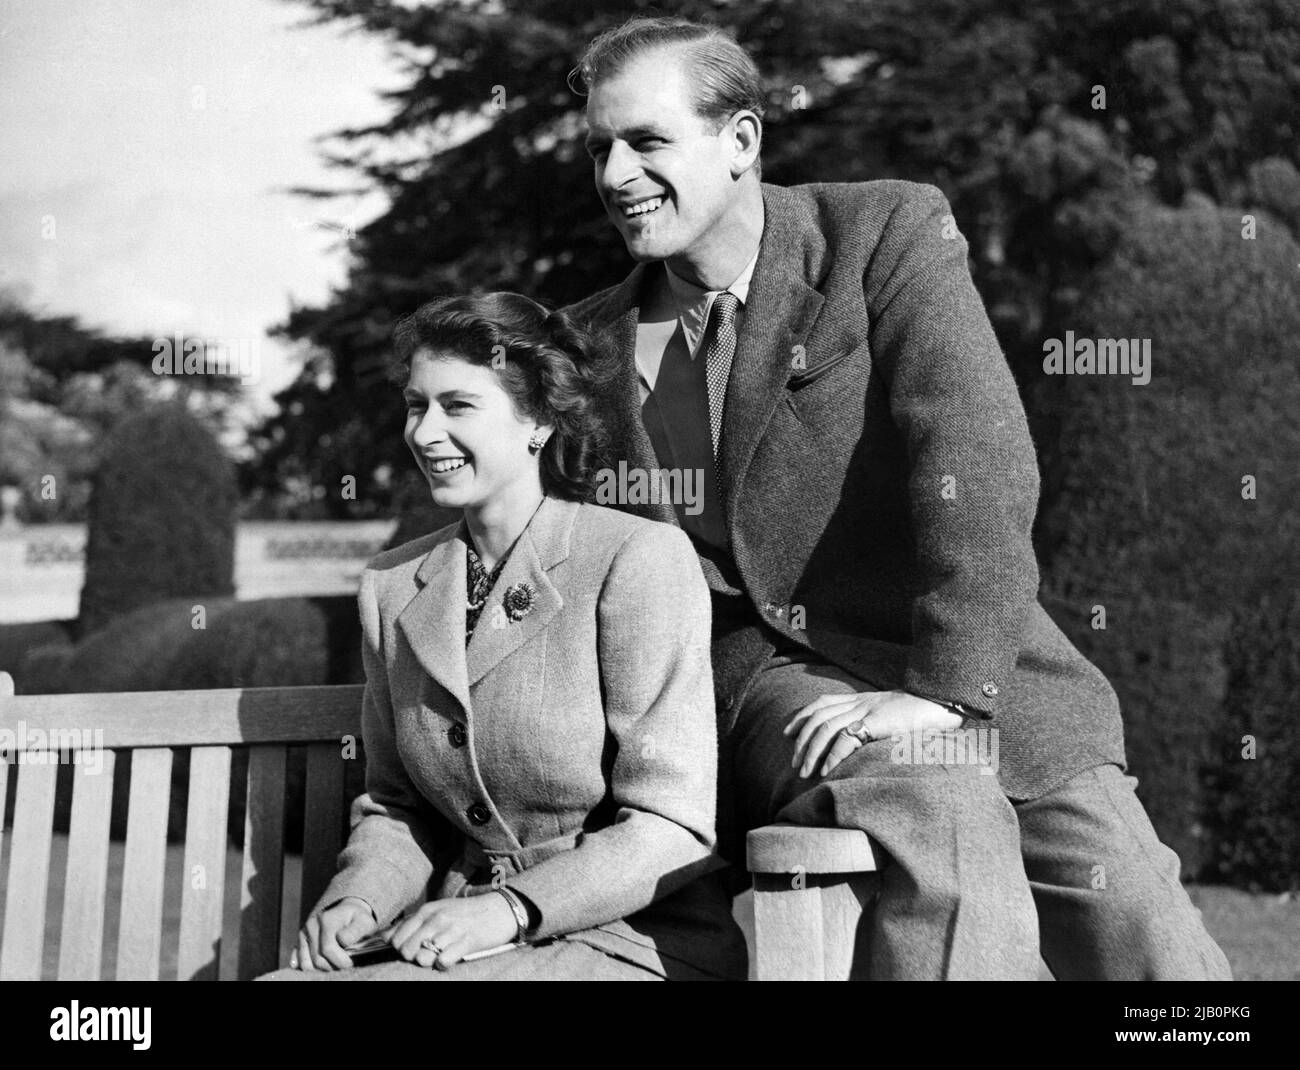 La principessa britannica Elisabetta (futura regina Elisabetta II) e suo marito Filippo, Duca di Edimburgo, posano durante la loro luna di miele, il 25 novembre 1947 nella tenuta di Broadlands, Hampshire Foto Stock